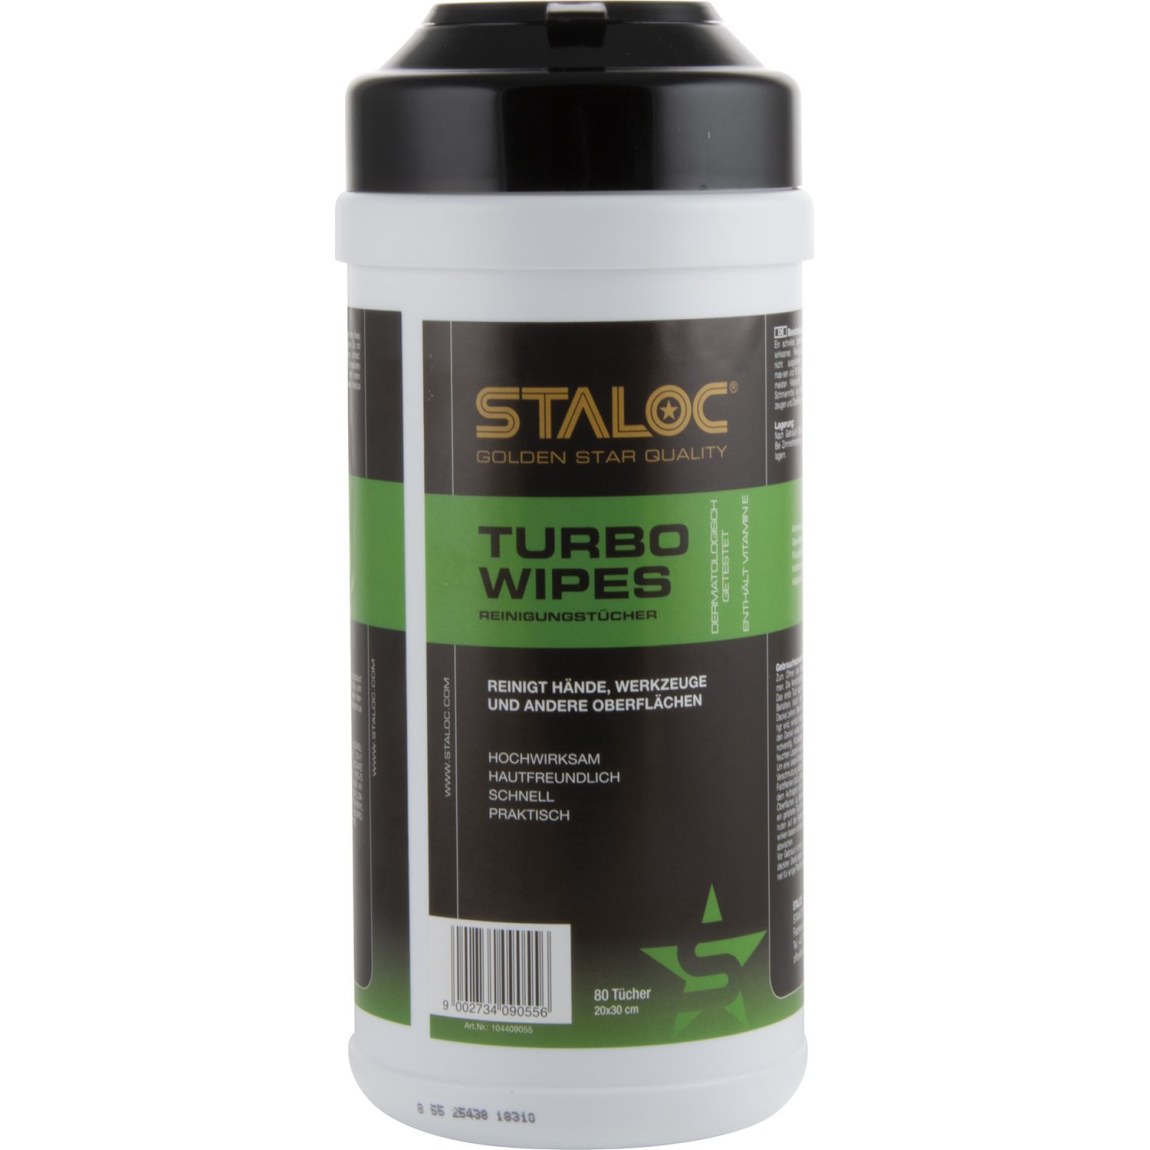 STALOC Turbo Wipes čisticí ubrousky 80 ks - Železářství Chemicko-technické výrobky Čističe, chladicí, kluzné mazací prostředky